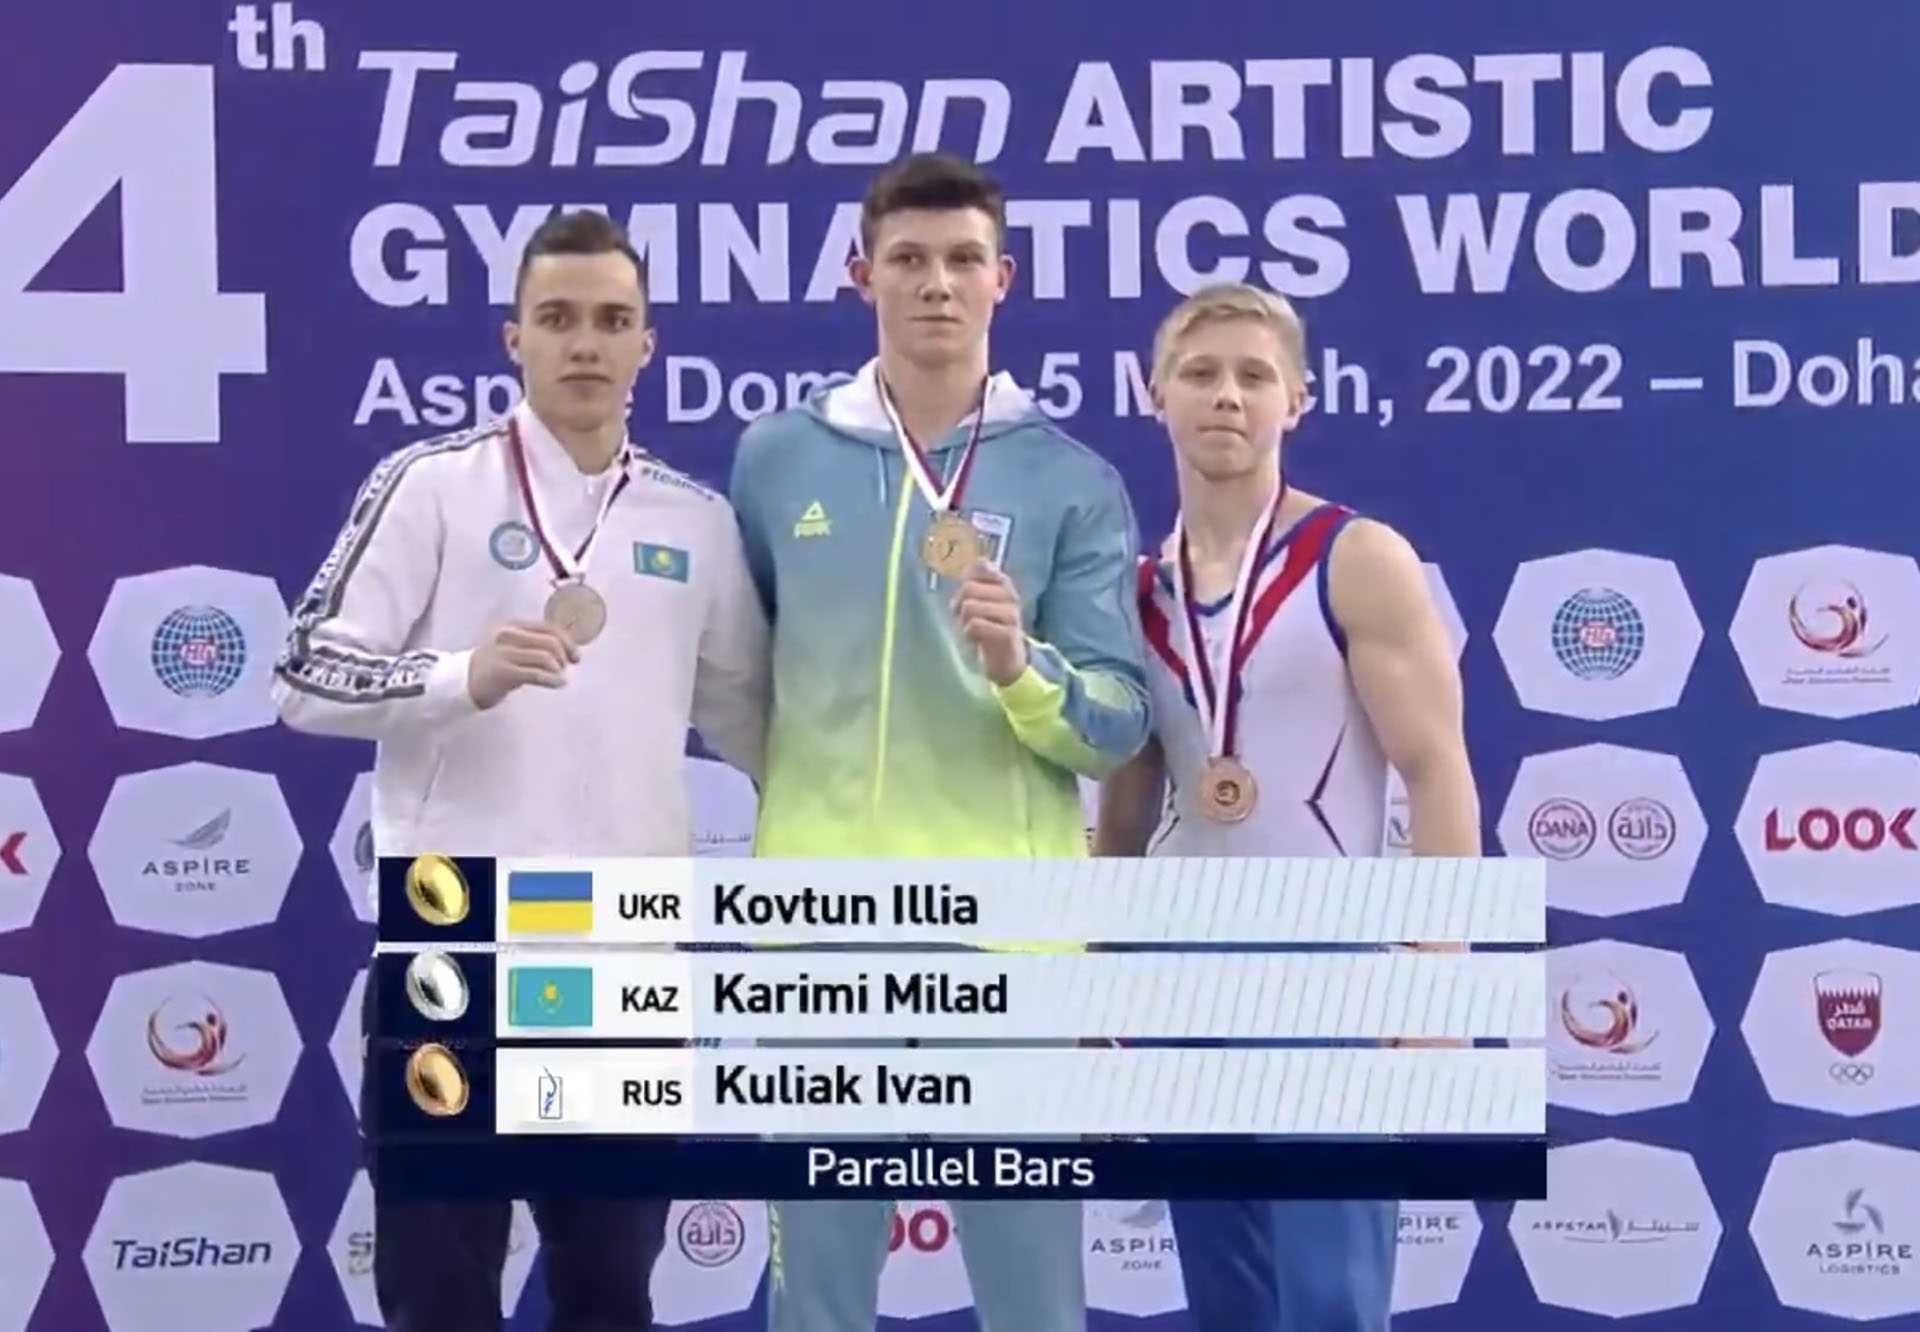 El polémico podio del gimnasta ruso Ivan Kuliak junto con un atleta ucraniano. 